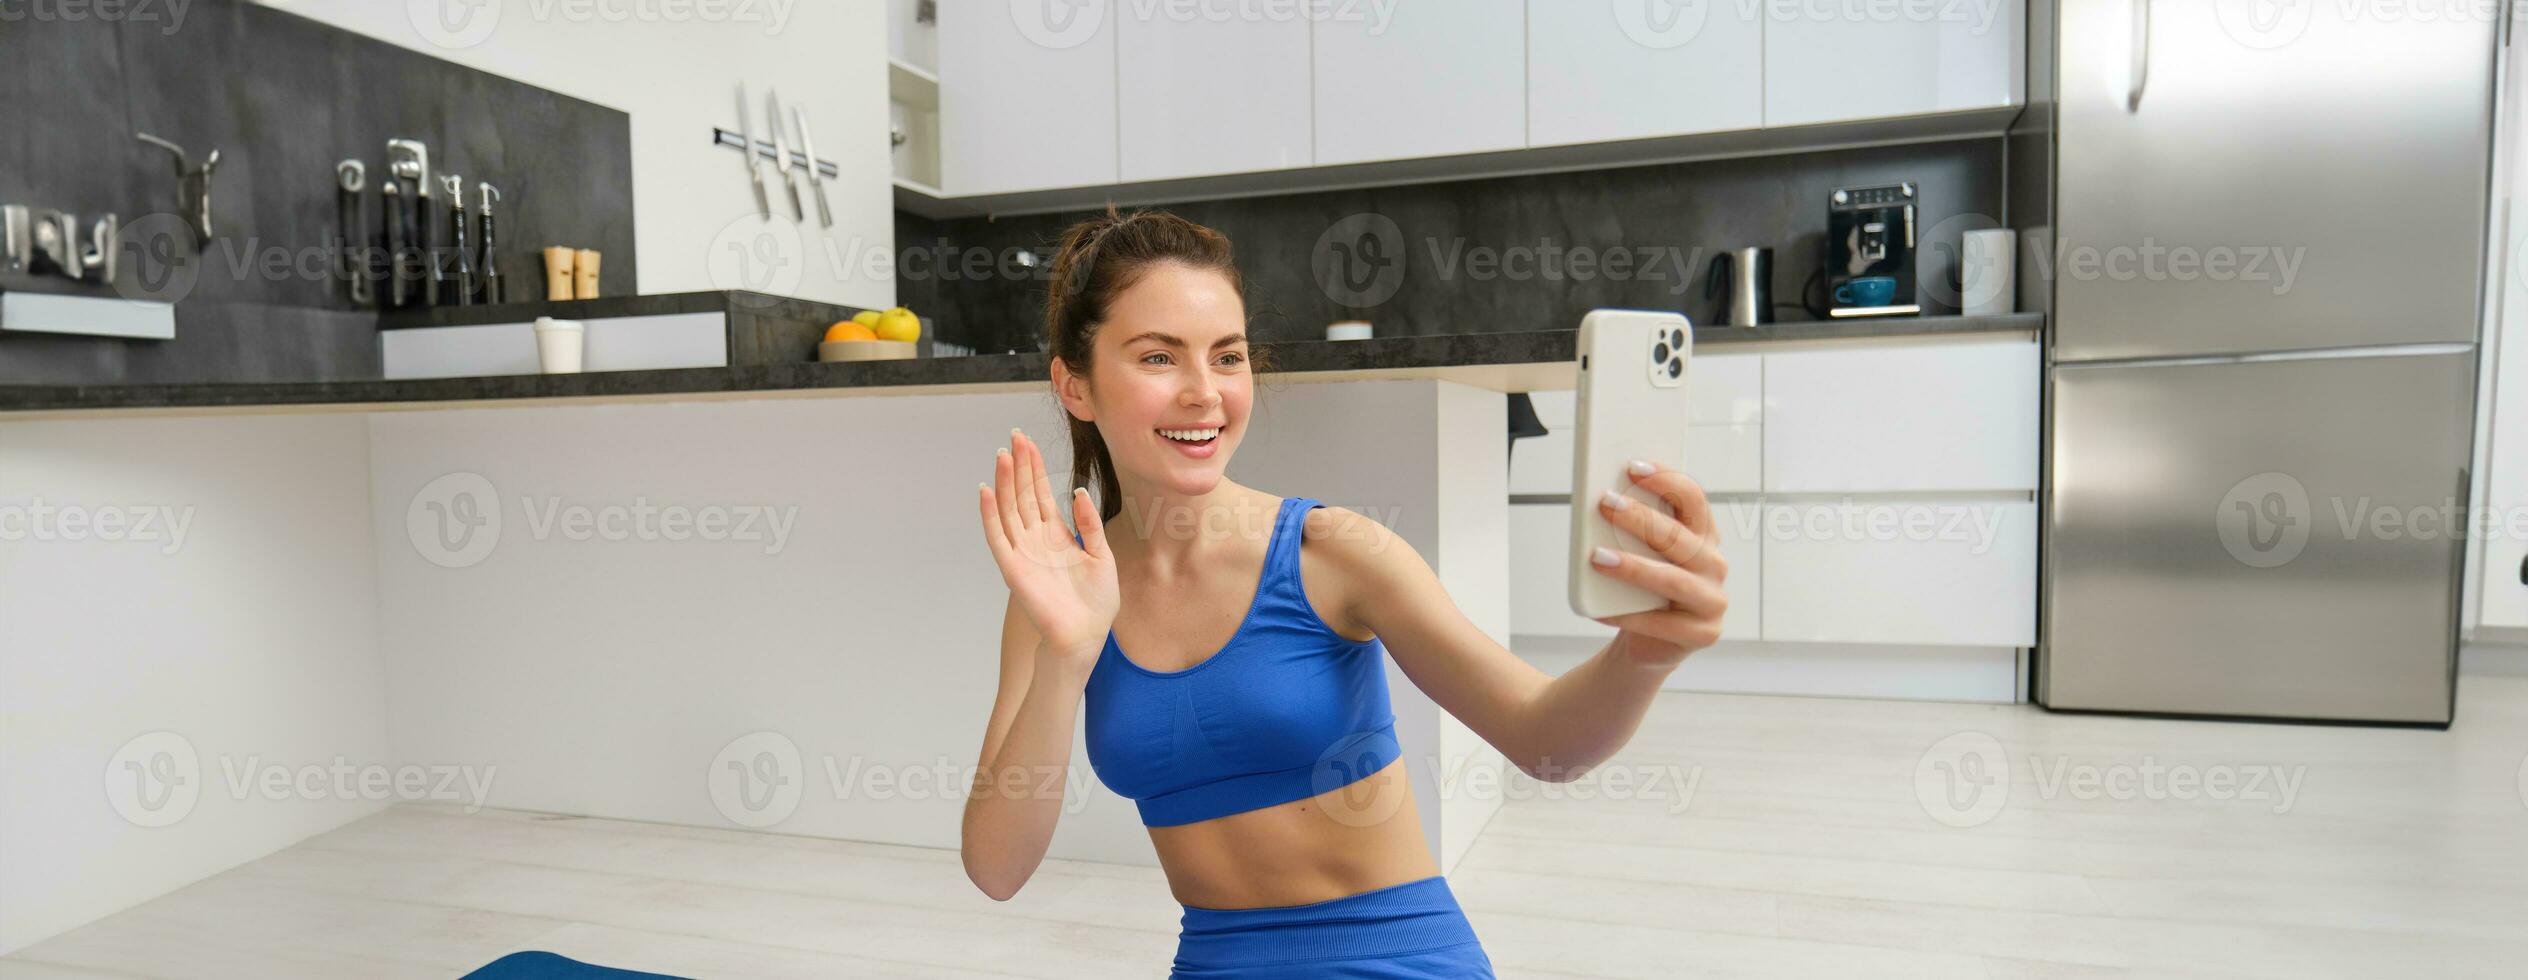 retrato de joven aptitud chica, blogger registros su rutina de ejercicio desde hogar, poses para selfie en teléfono inteligente, lo hace yoga en cámara, se sienta en azul sujetador deportivo y polainas foto